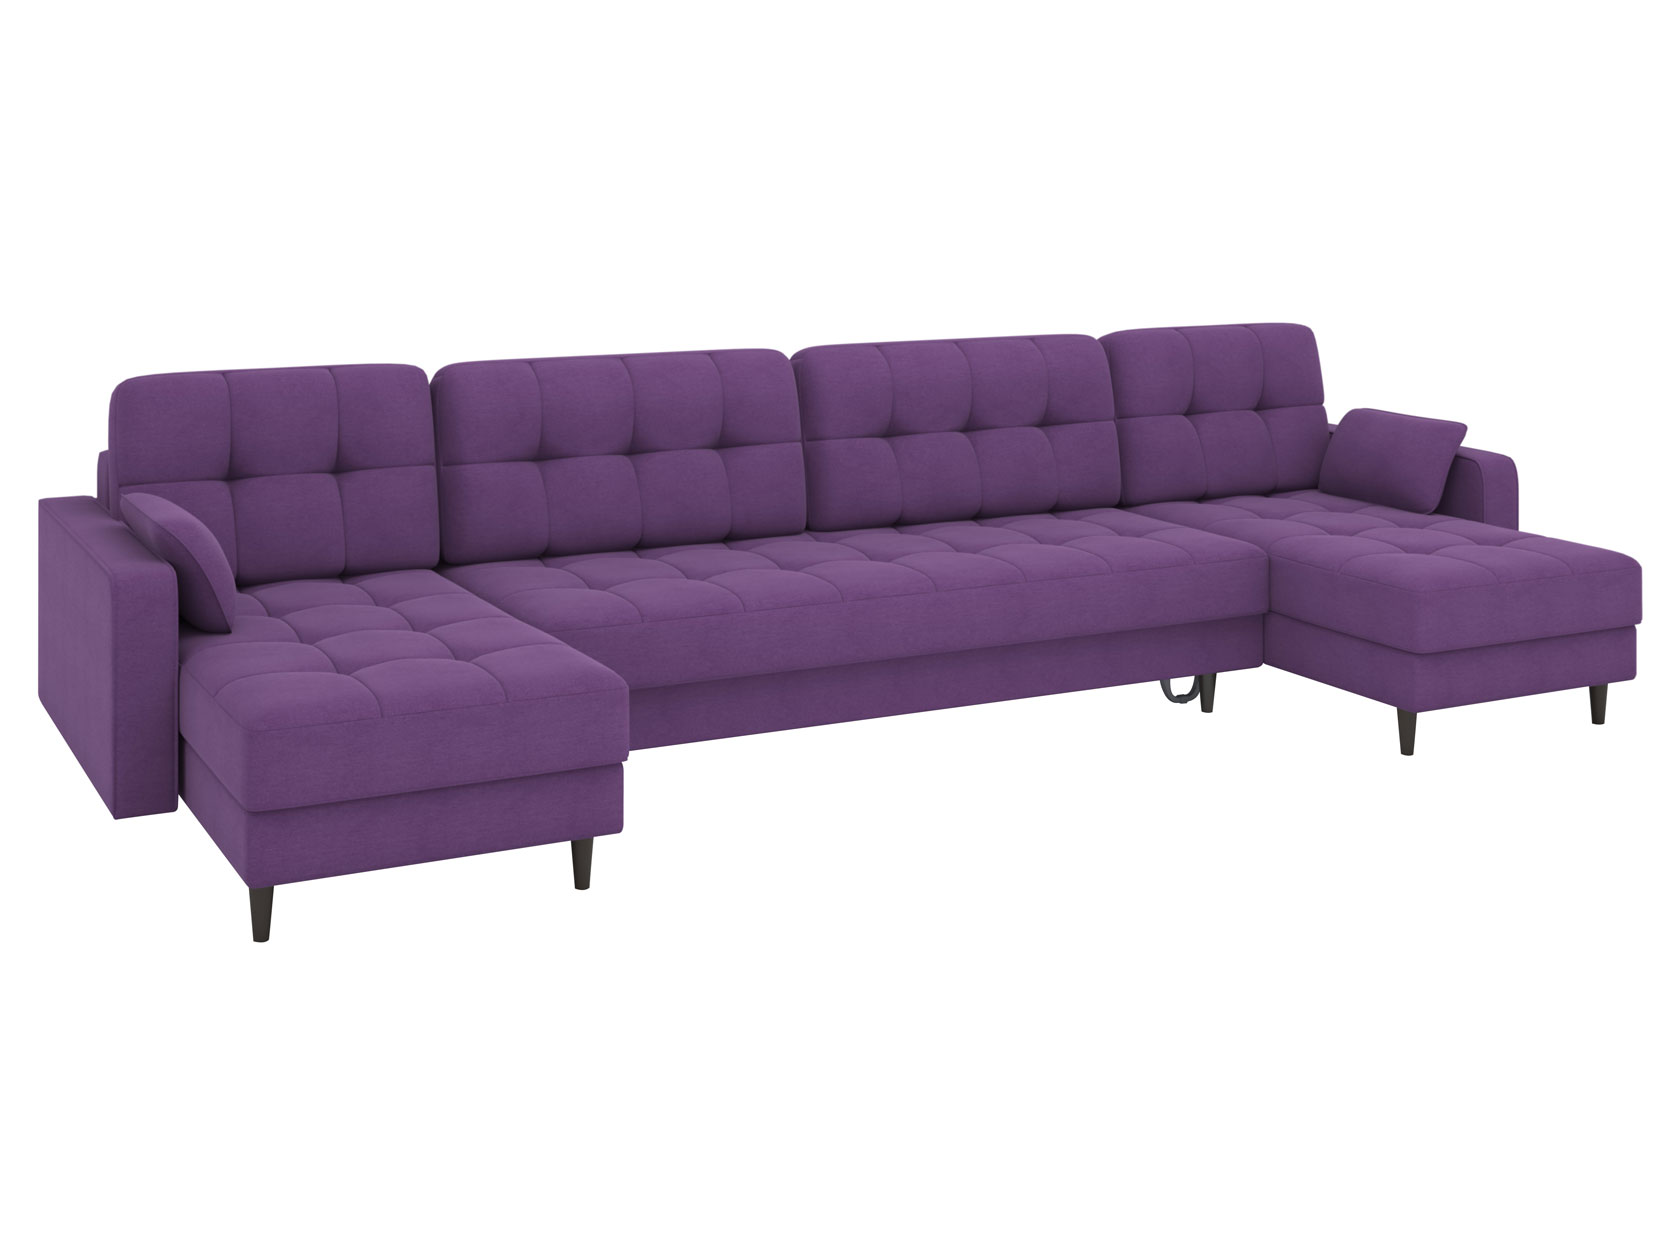 П-образный диван с оттоманками Диван Санфорд П-образный с оттоманками макси Санфорд Макси фото 19